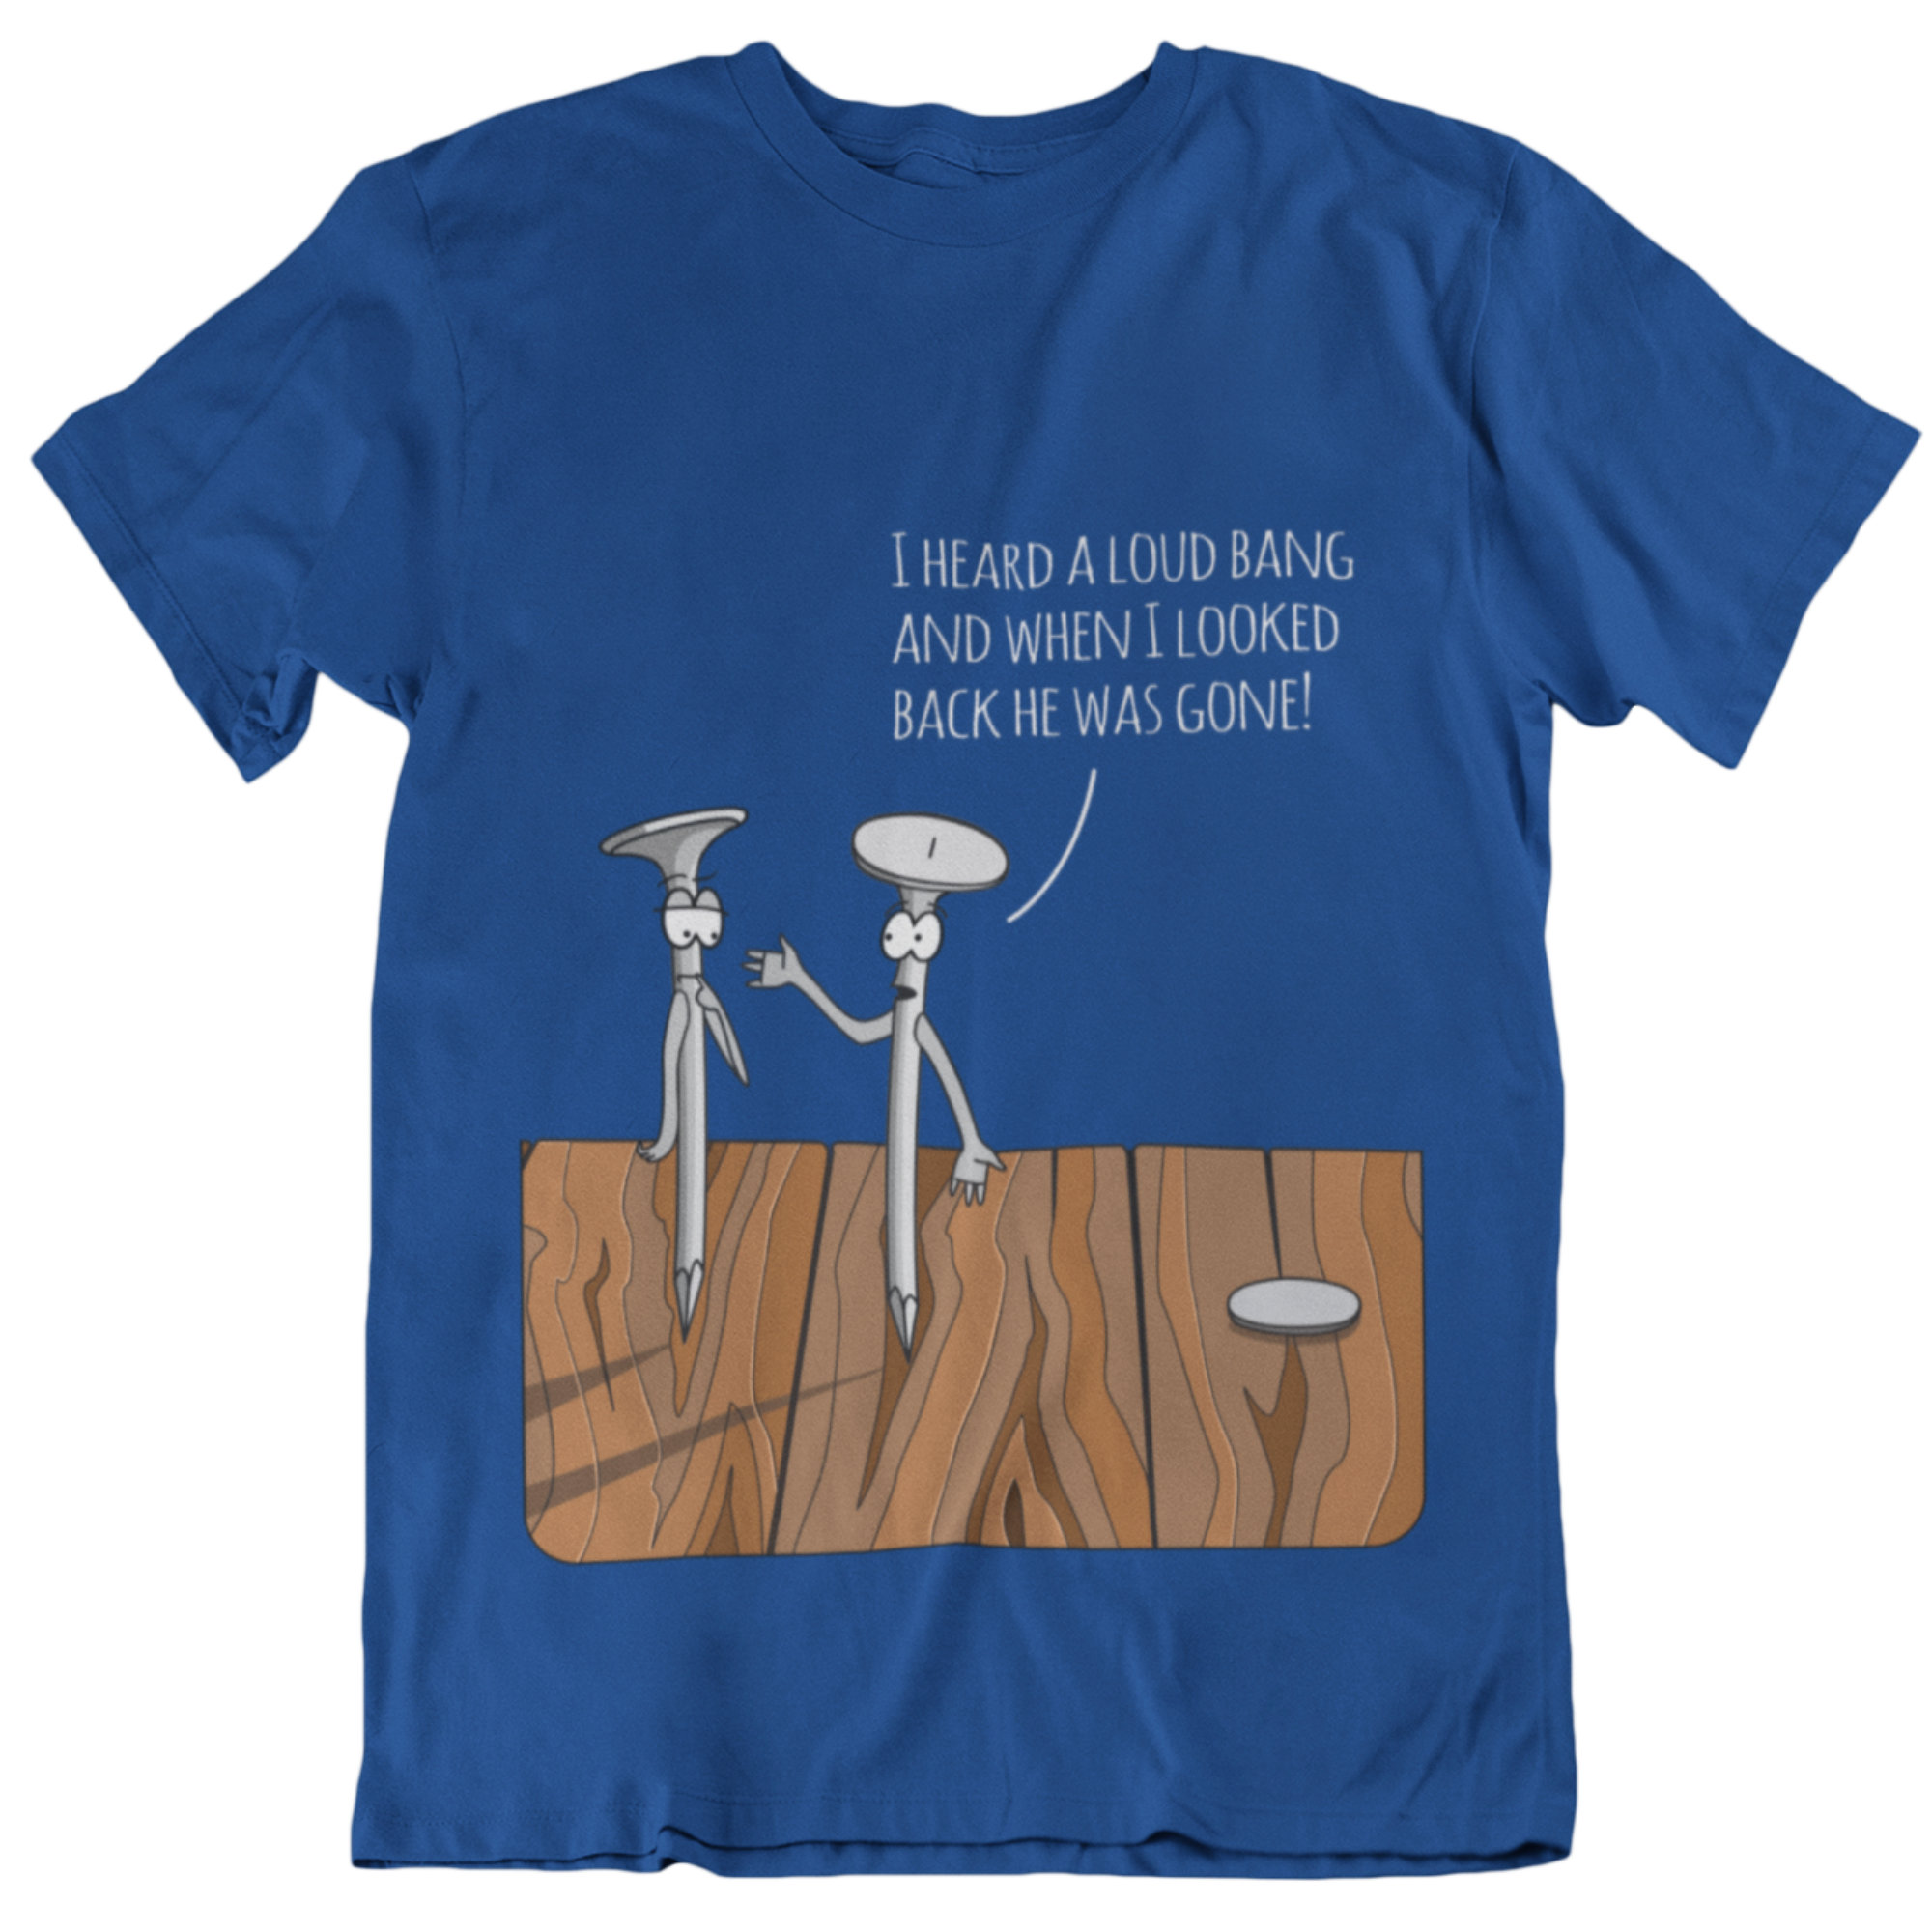 Funny Woodworking joke shirt NA